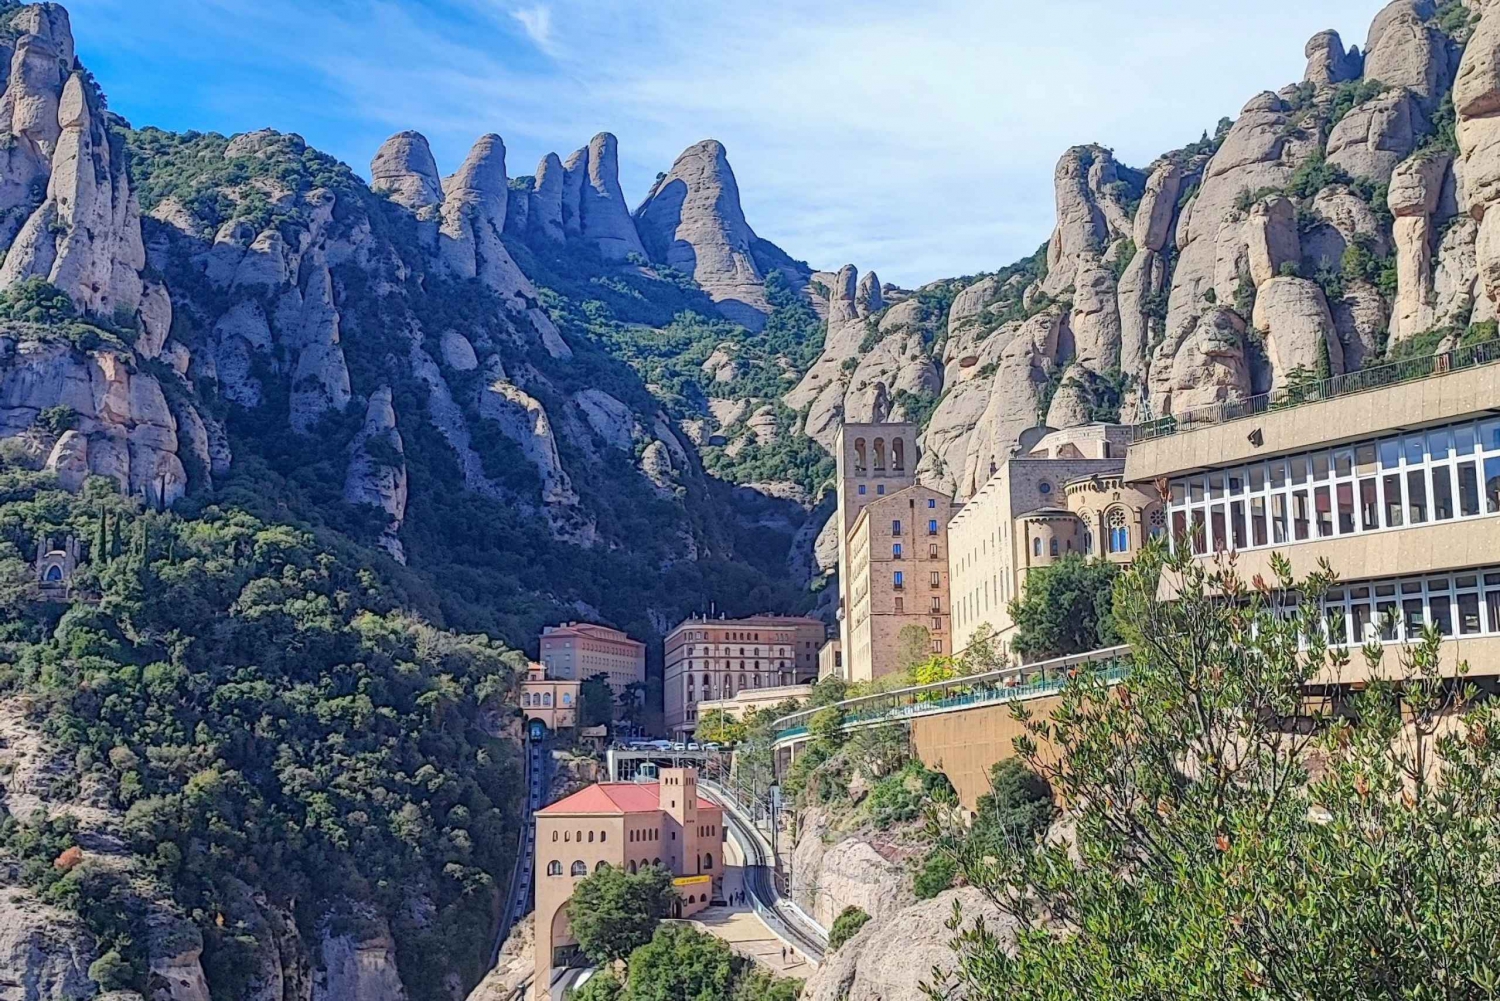 Montserrat-tur for små grupper med tog og taubane